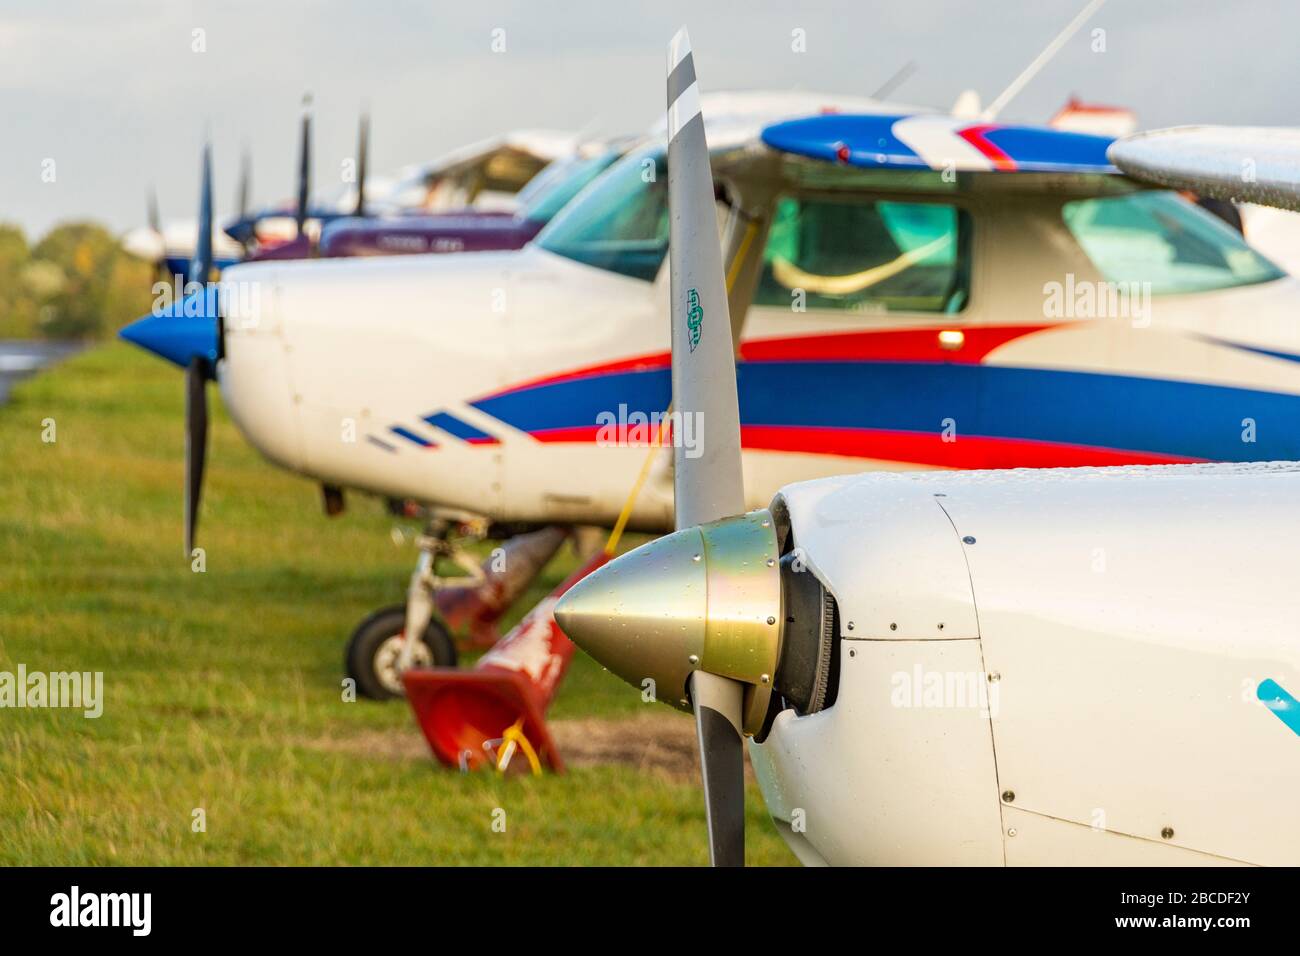 A lineup of Cessna light aircraft Stock Photo